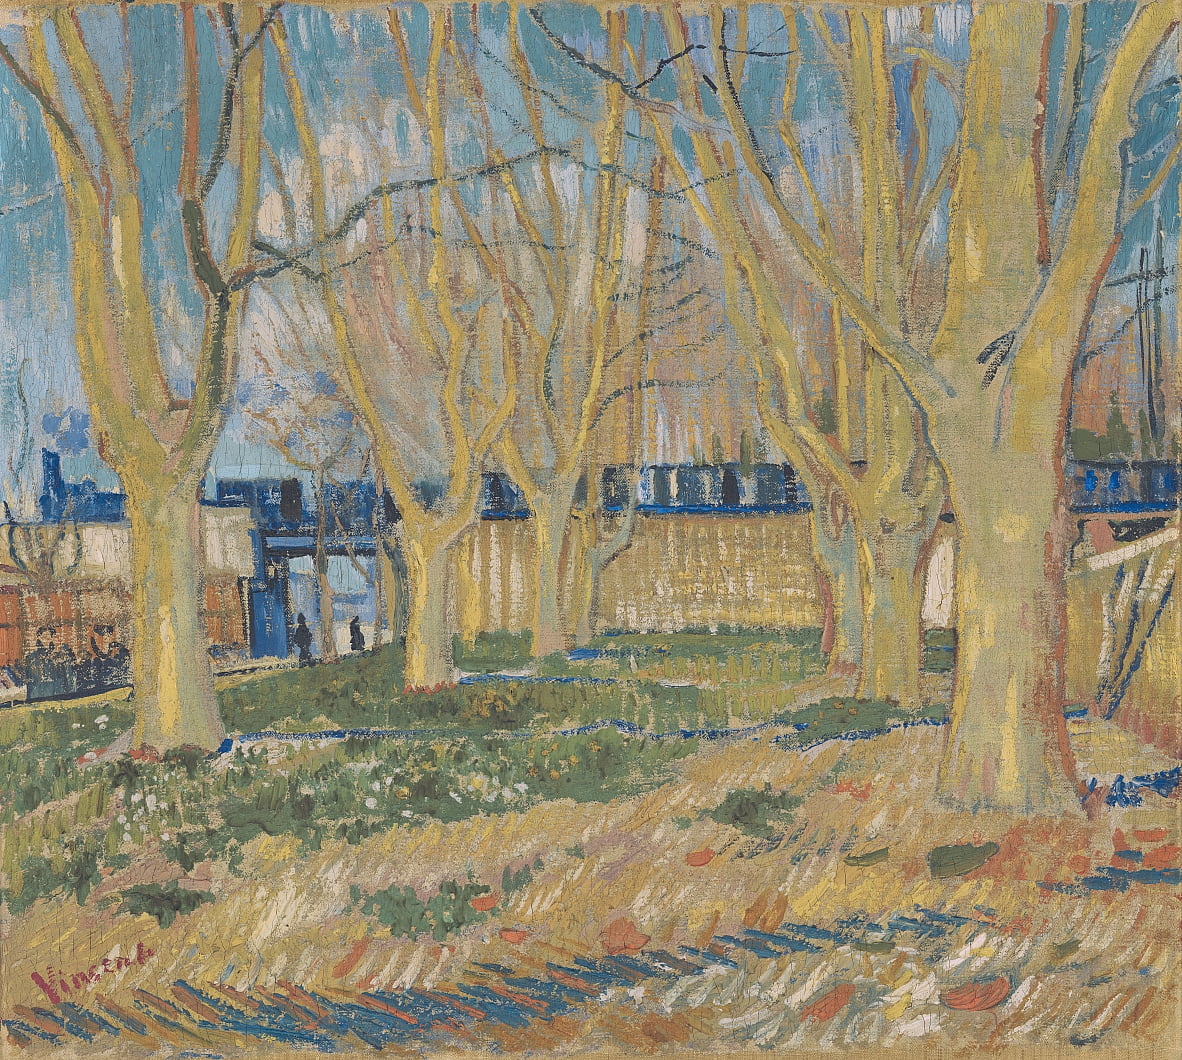 Le Train Bleu - Vincent Van Gogh - 1888